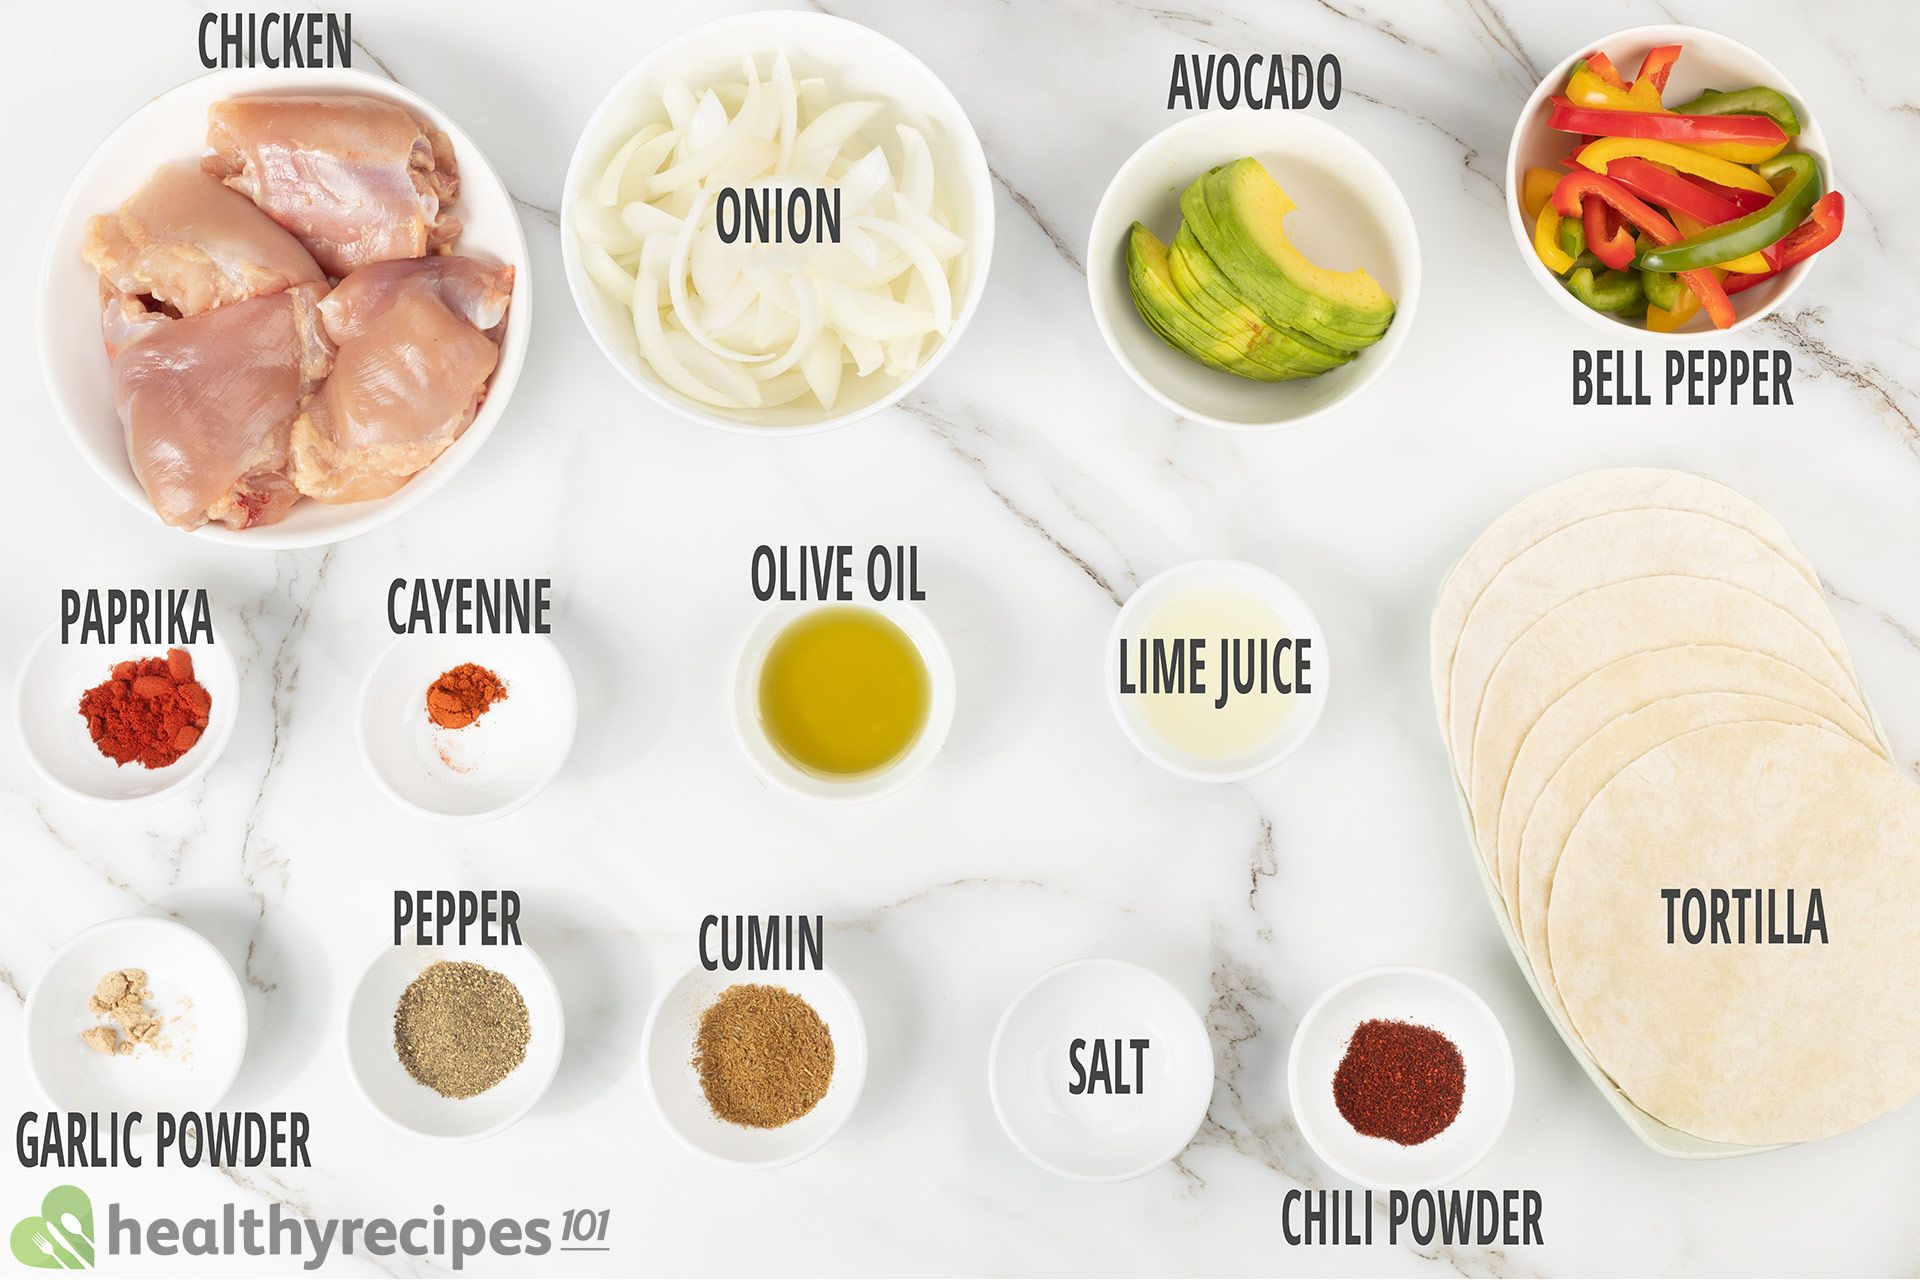 Ingredients for Chicken Fajitas